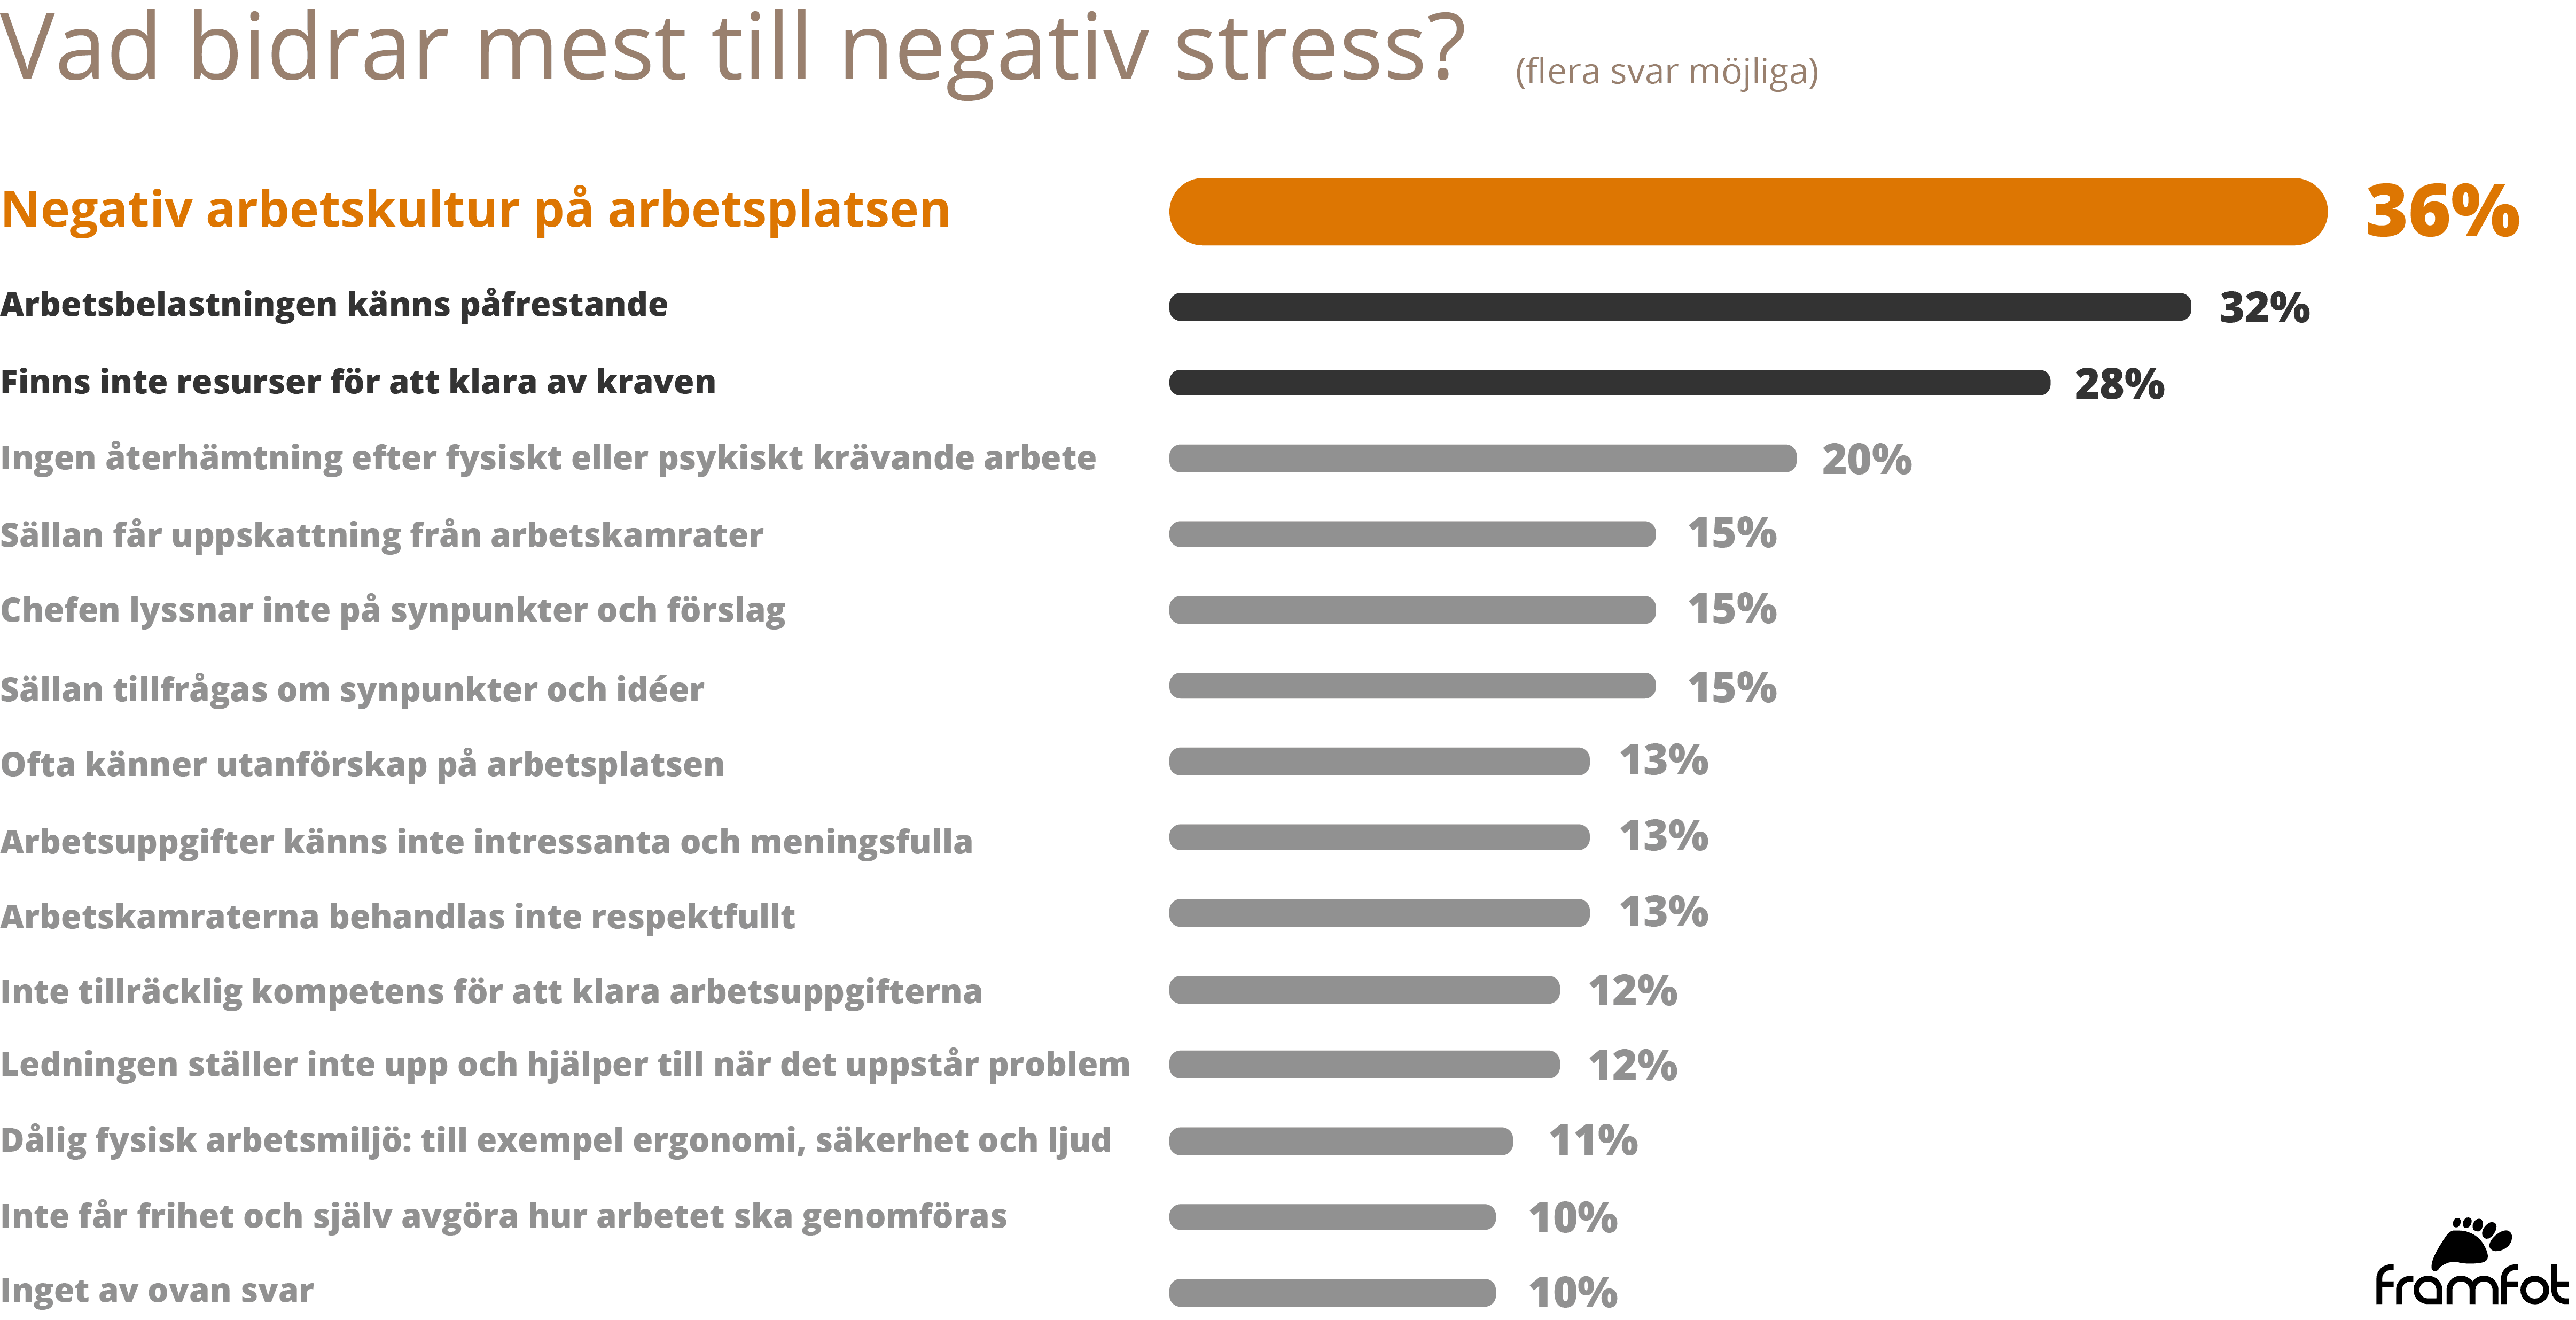 36% tycker att negativ arbetskultur på arbetsplatsen bidrog mest till negativ stress